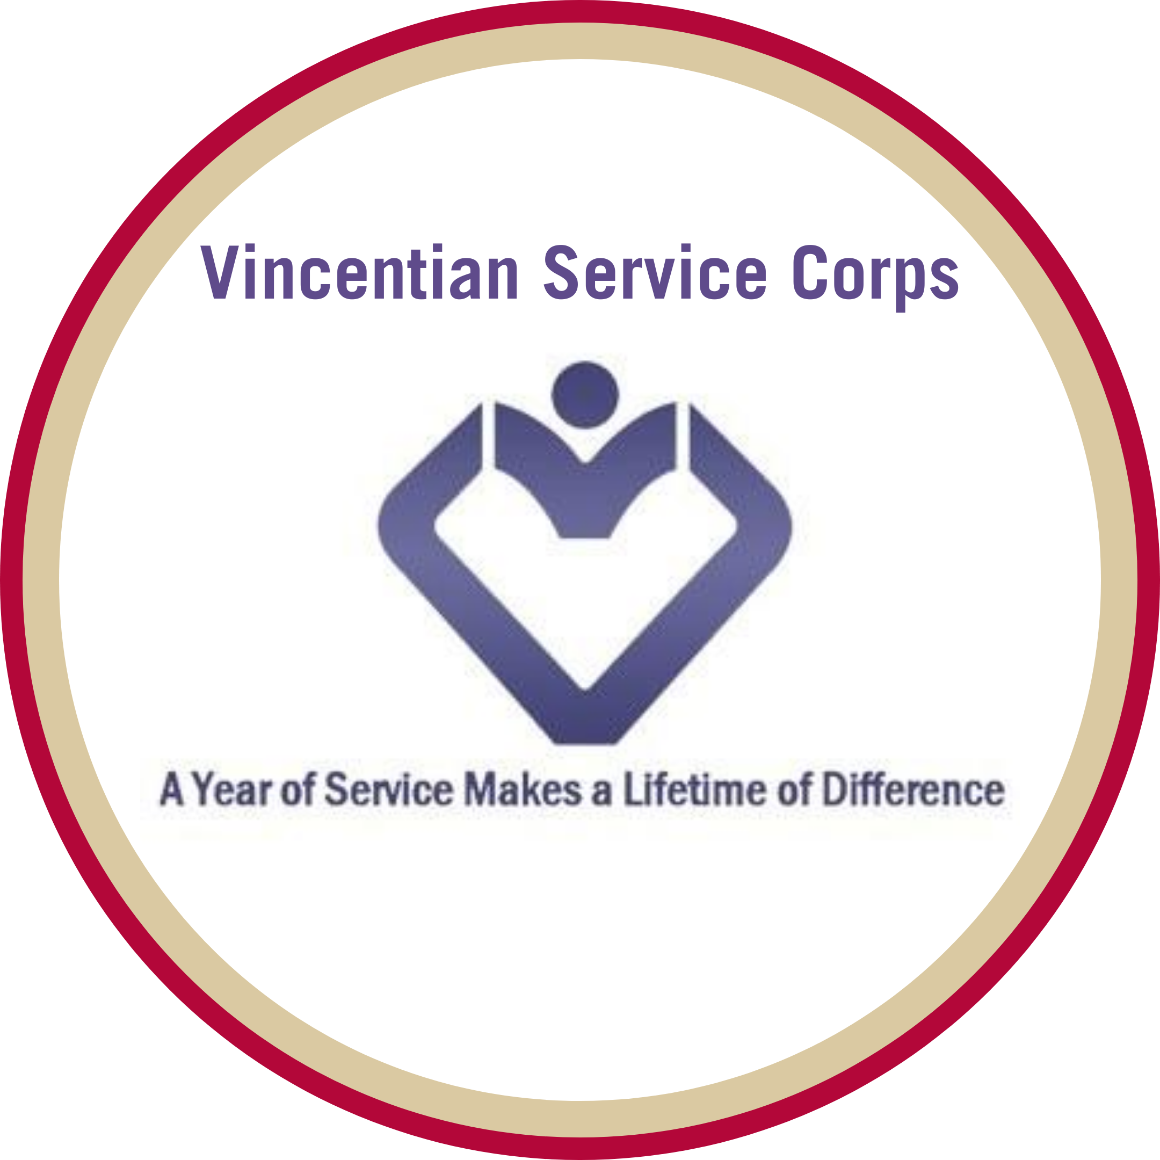 Vincentian Service Corps